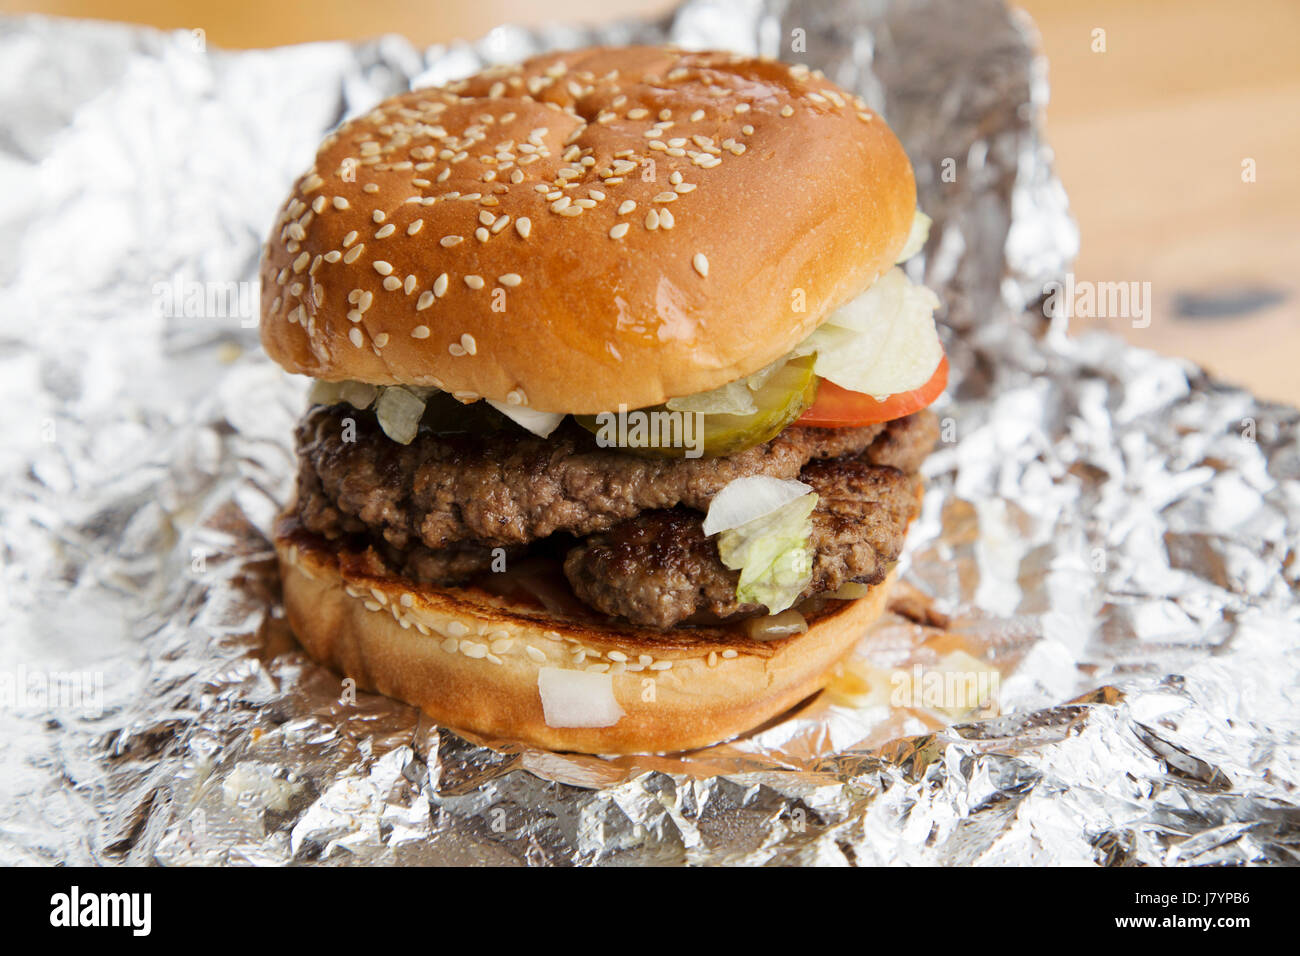 Ein Beefburger wird in einem bestreute Brötchen serviert. Sesam oben das Brot Brötchen. Stockfoto